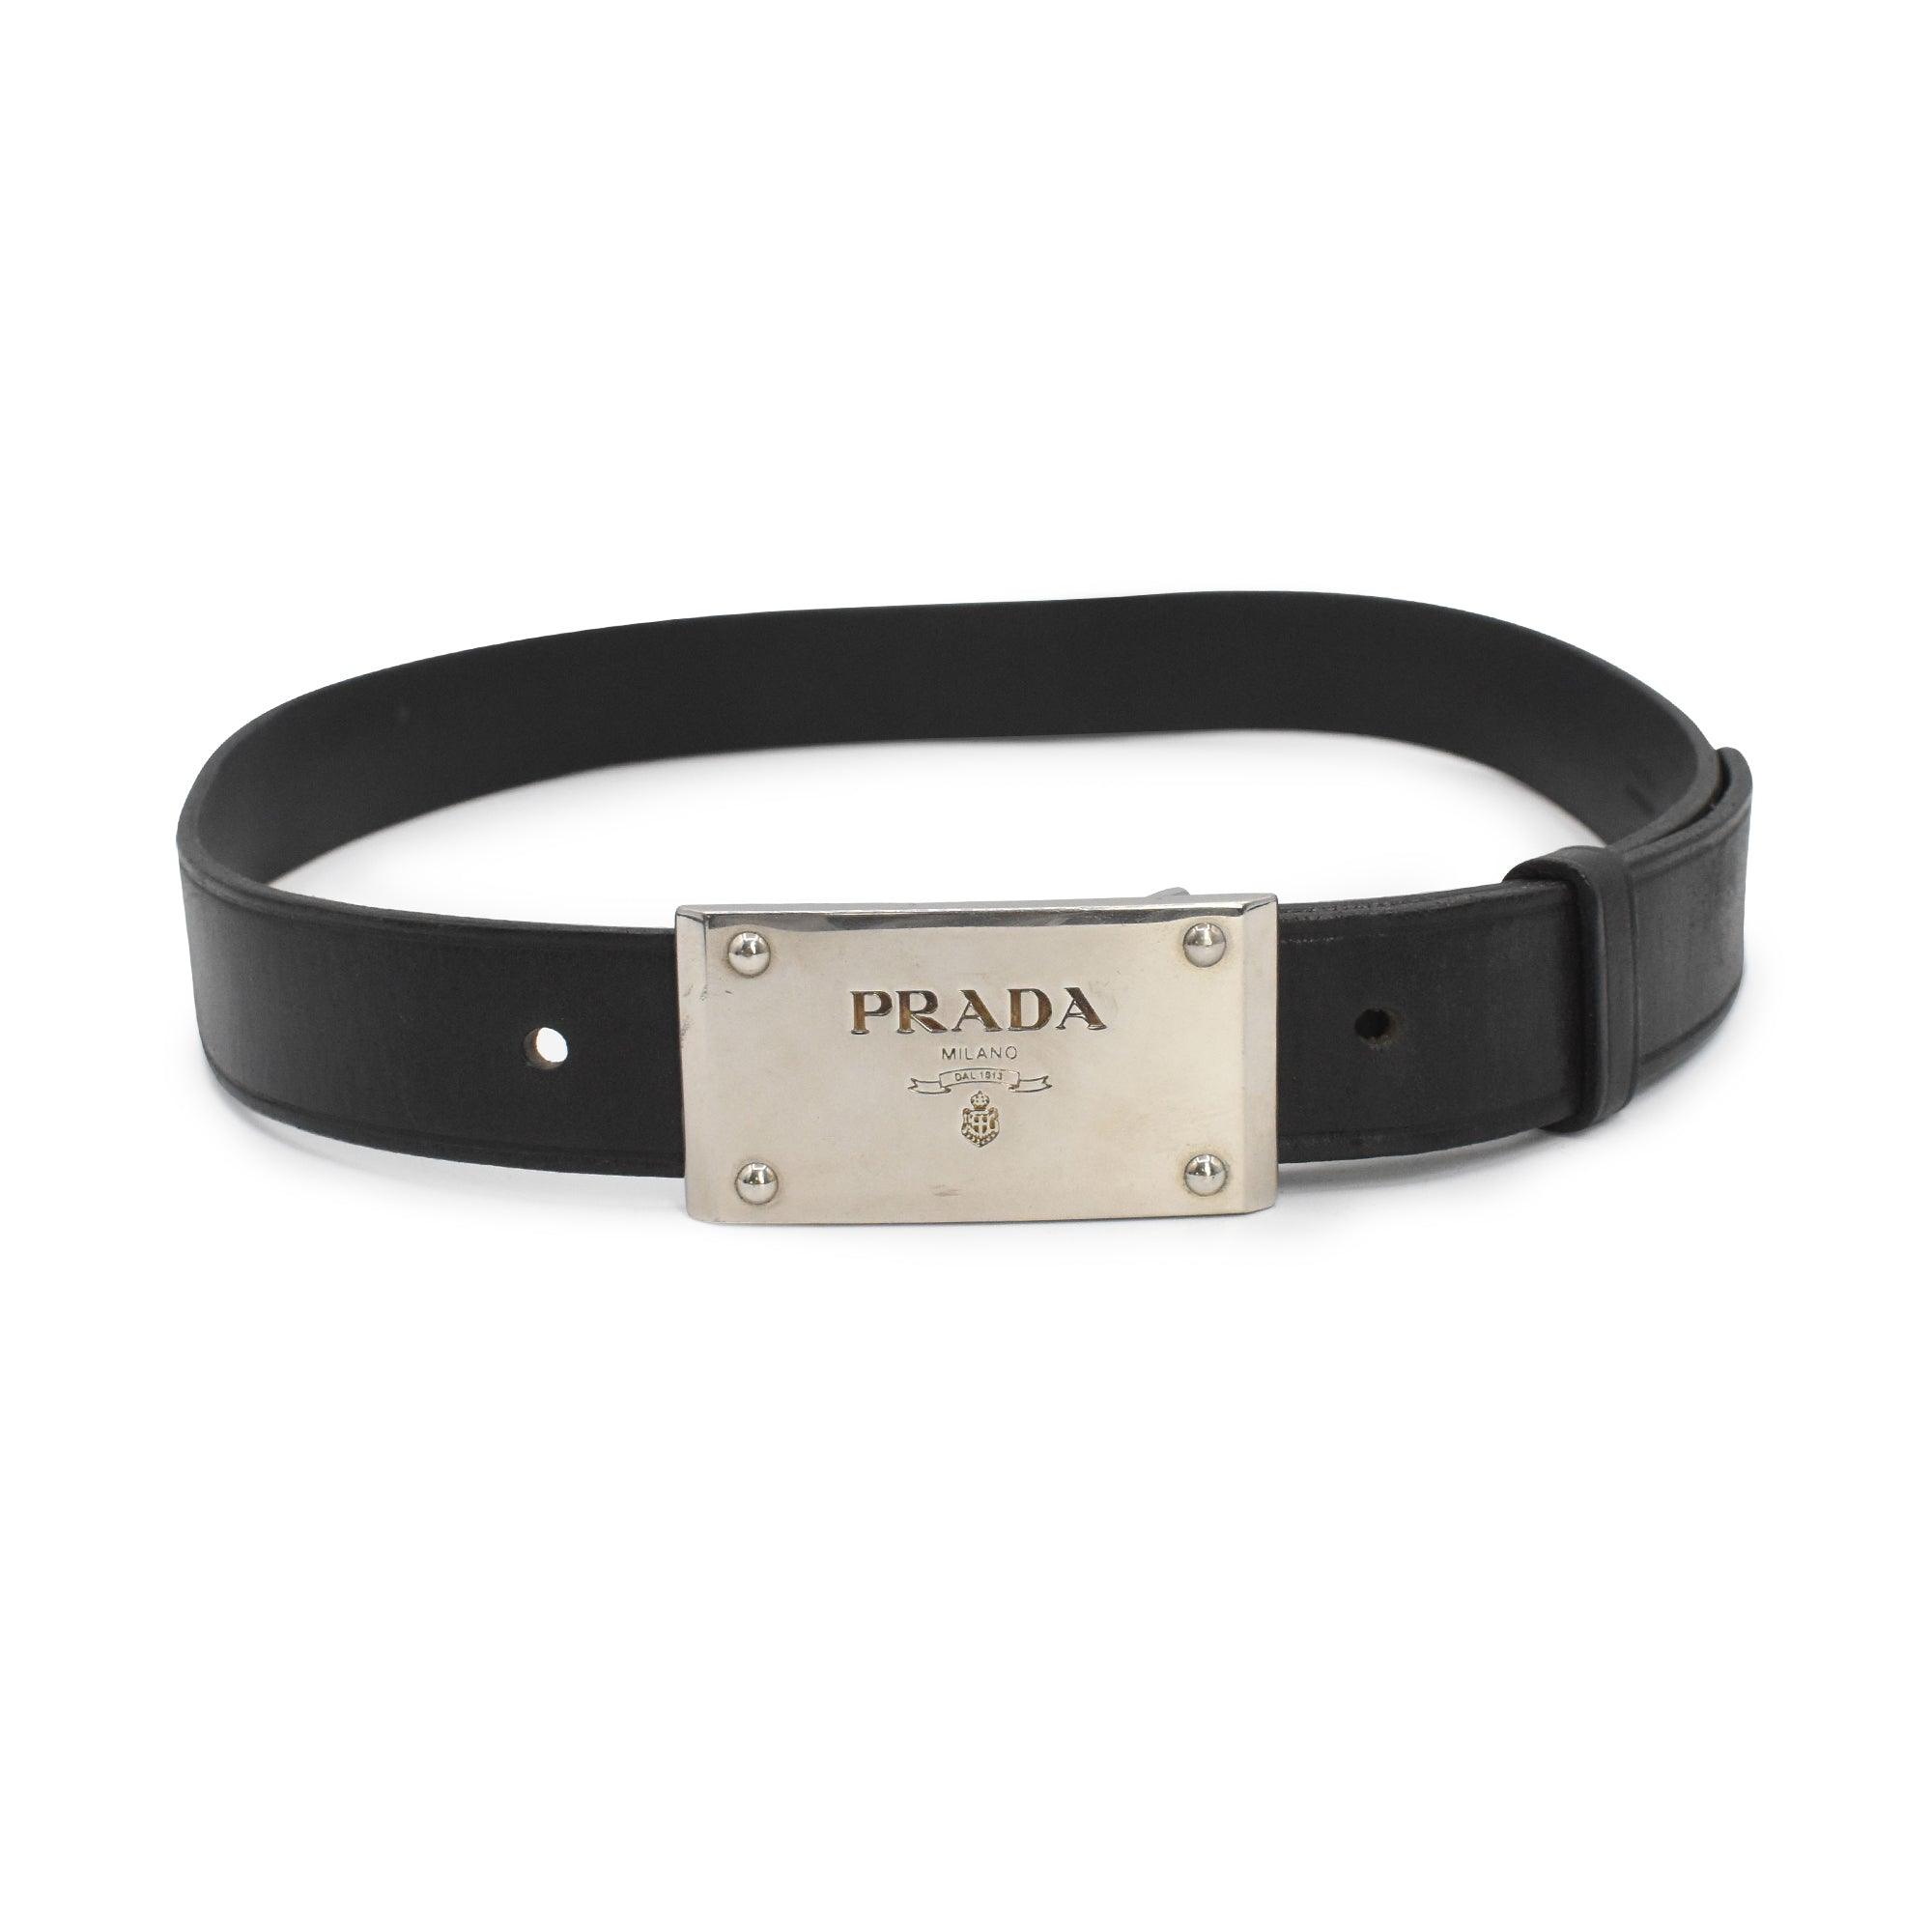 Prada Leather Belt - 34/85 - Fashionably Yours